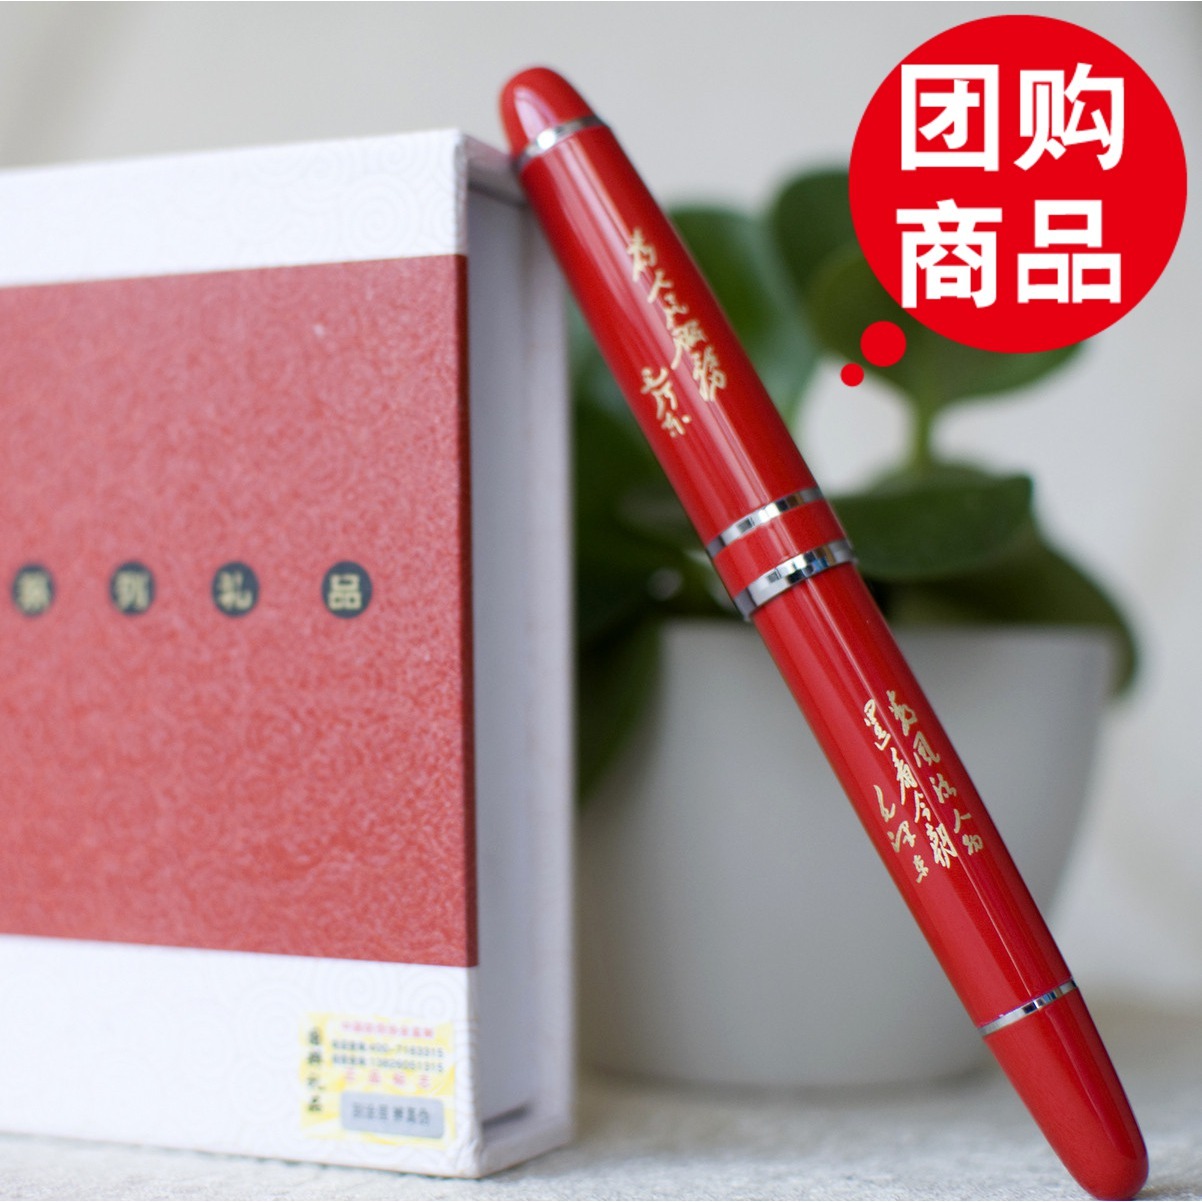 中号红瓷笔 签字笔 宝珠笔 实用小礼品 创意中秋节礼物 商务礼品